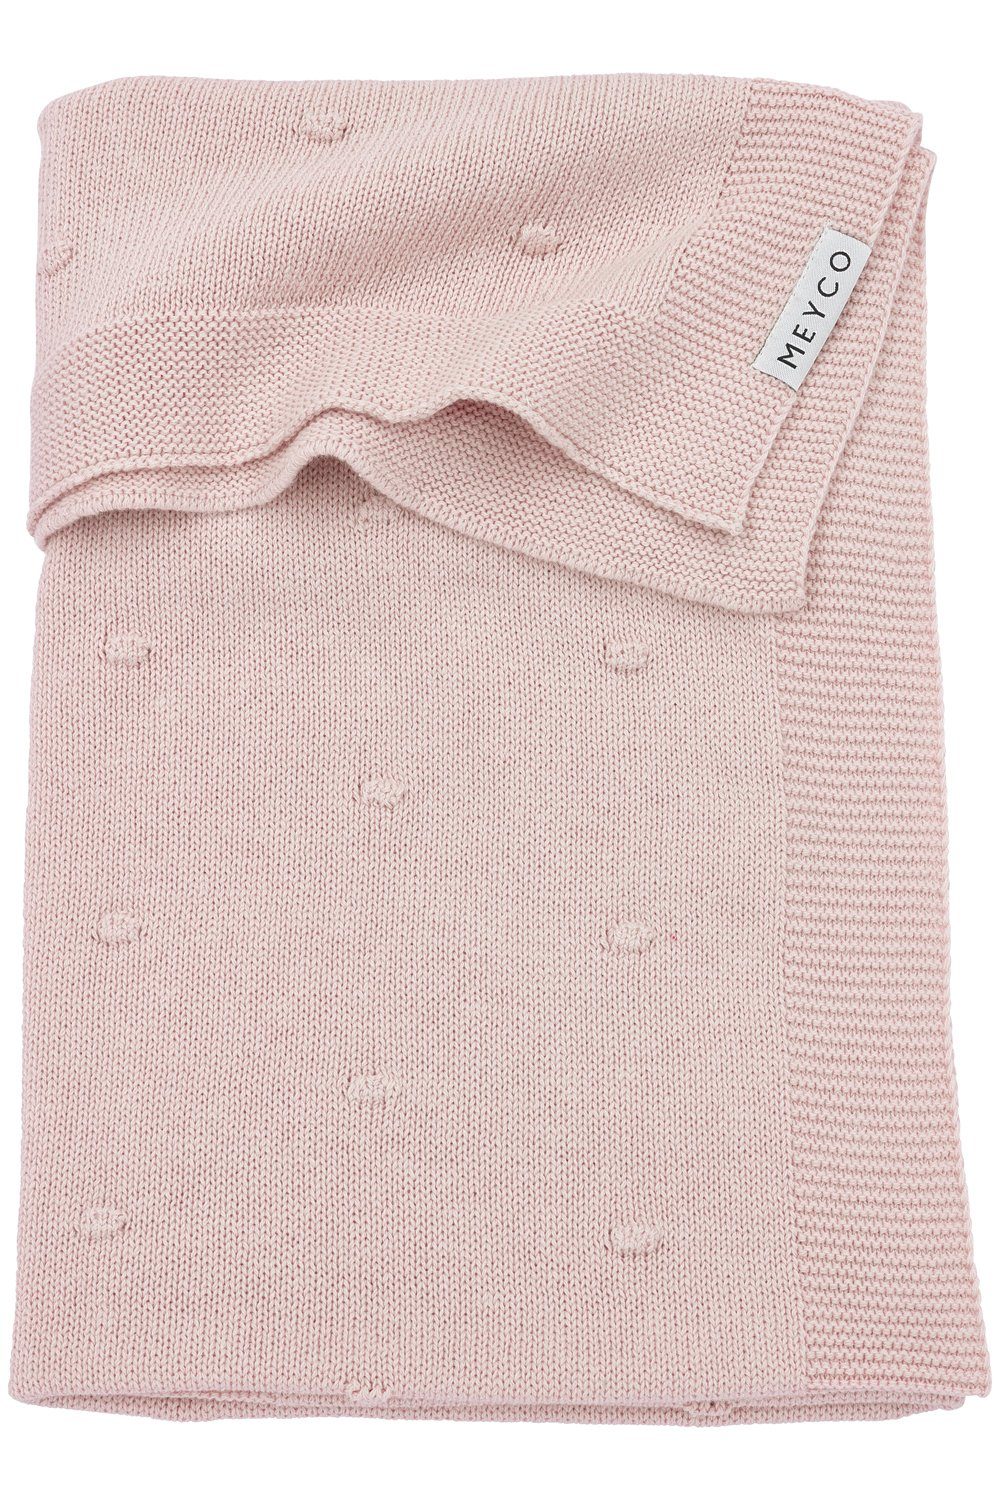 Babydecke Mini Knots Soft Pink, Meyco Baby, 100x150cm